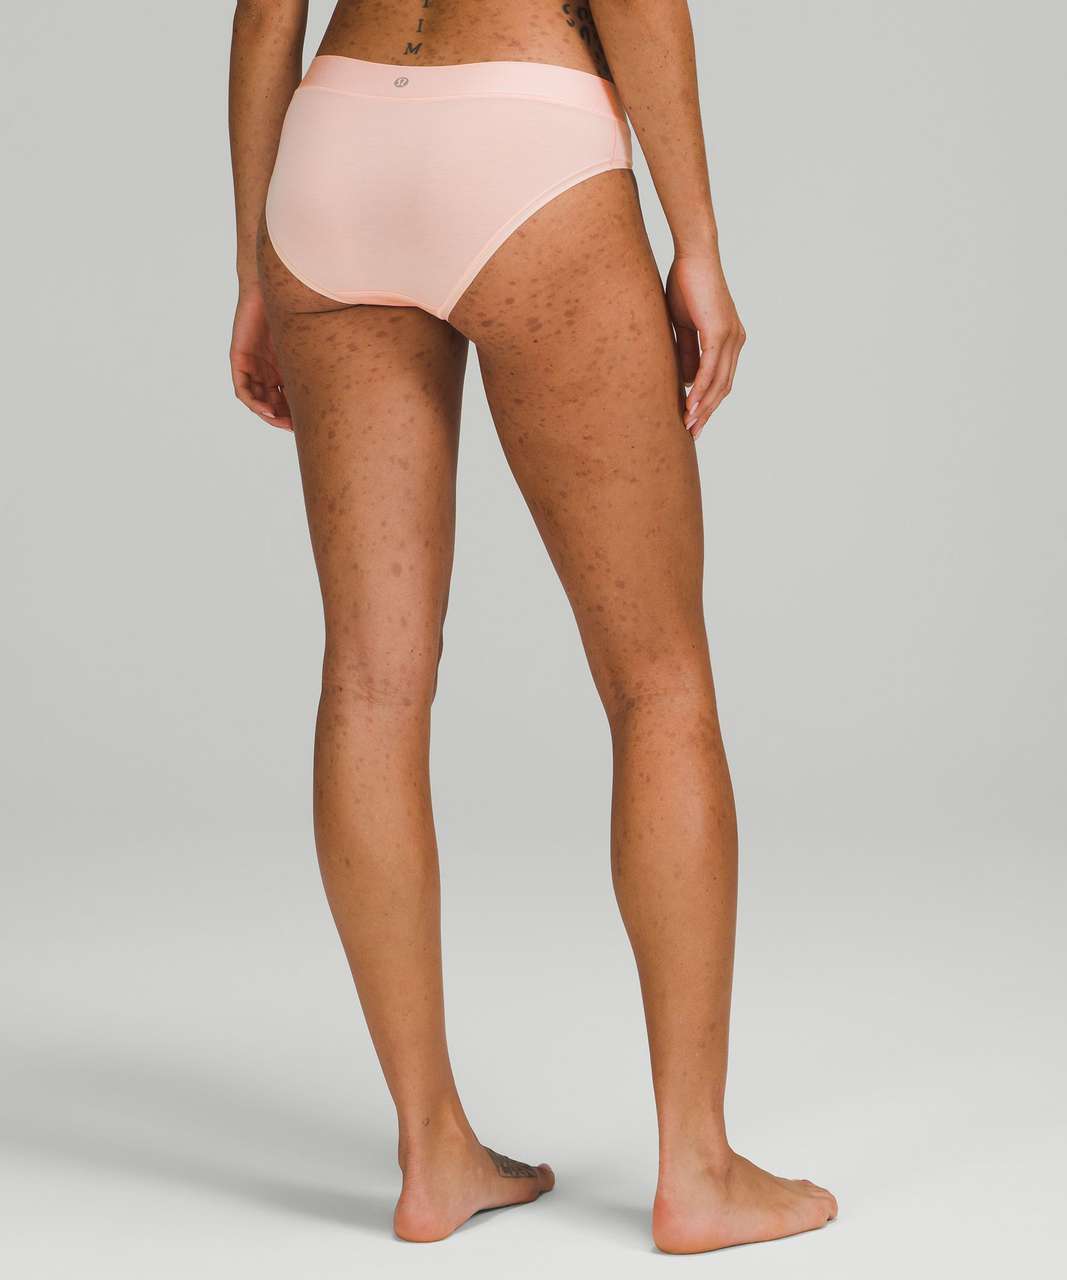 Lululemon UnderEase Mid Rise Bikini Underwear 3 Pack - Heritage 365 Camo Mini Pecan Tan Multi / Pink Mist / Black